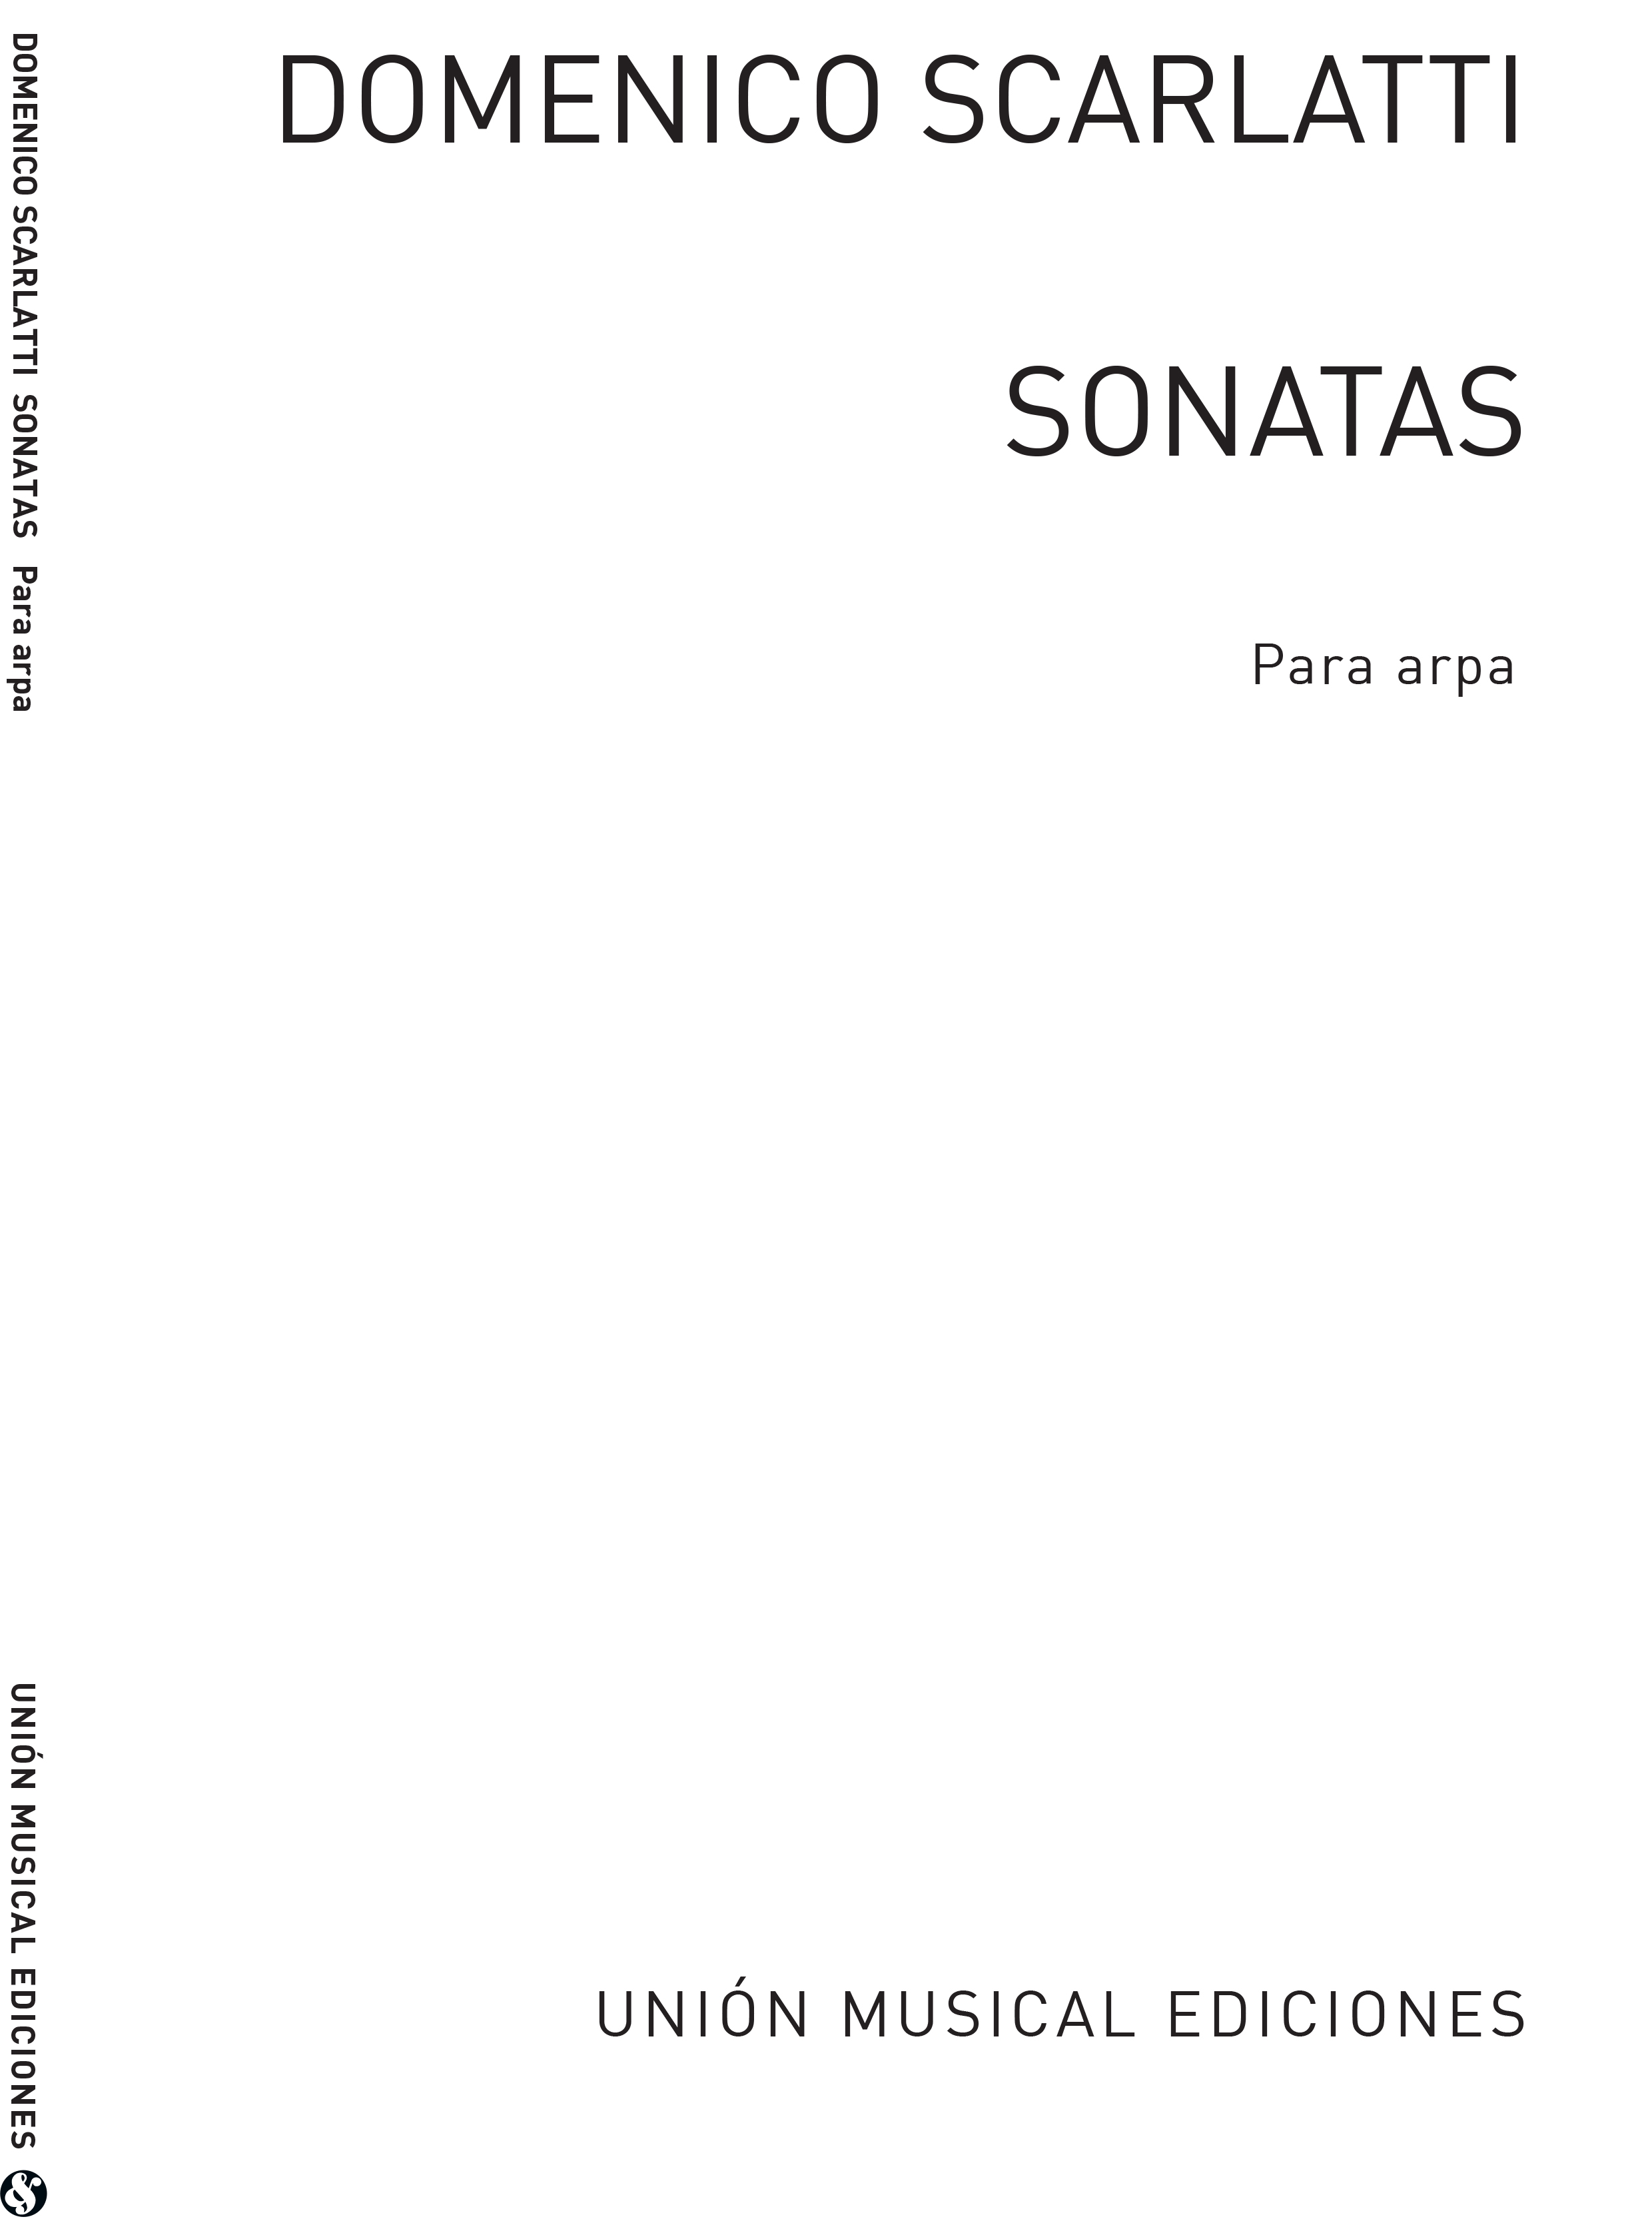 Scarlatti: Sonatas for Harp